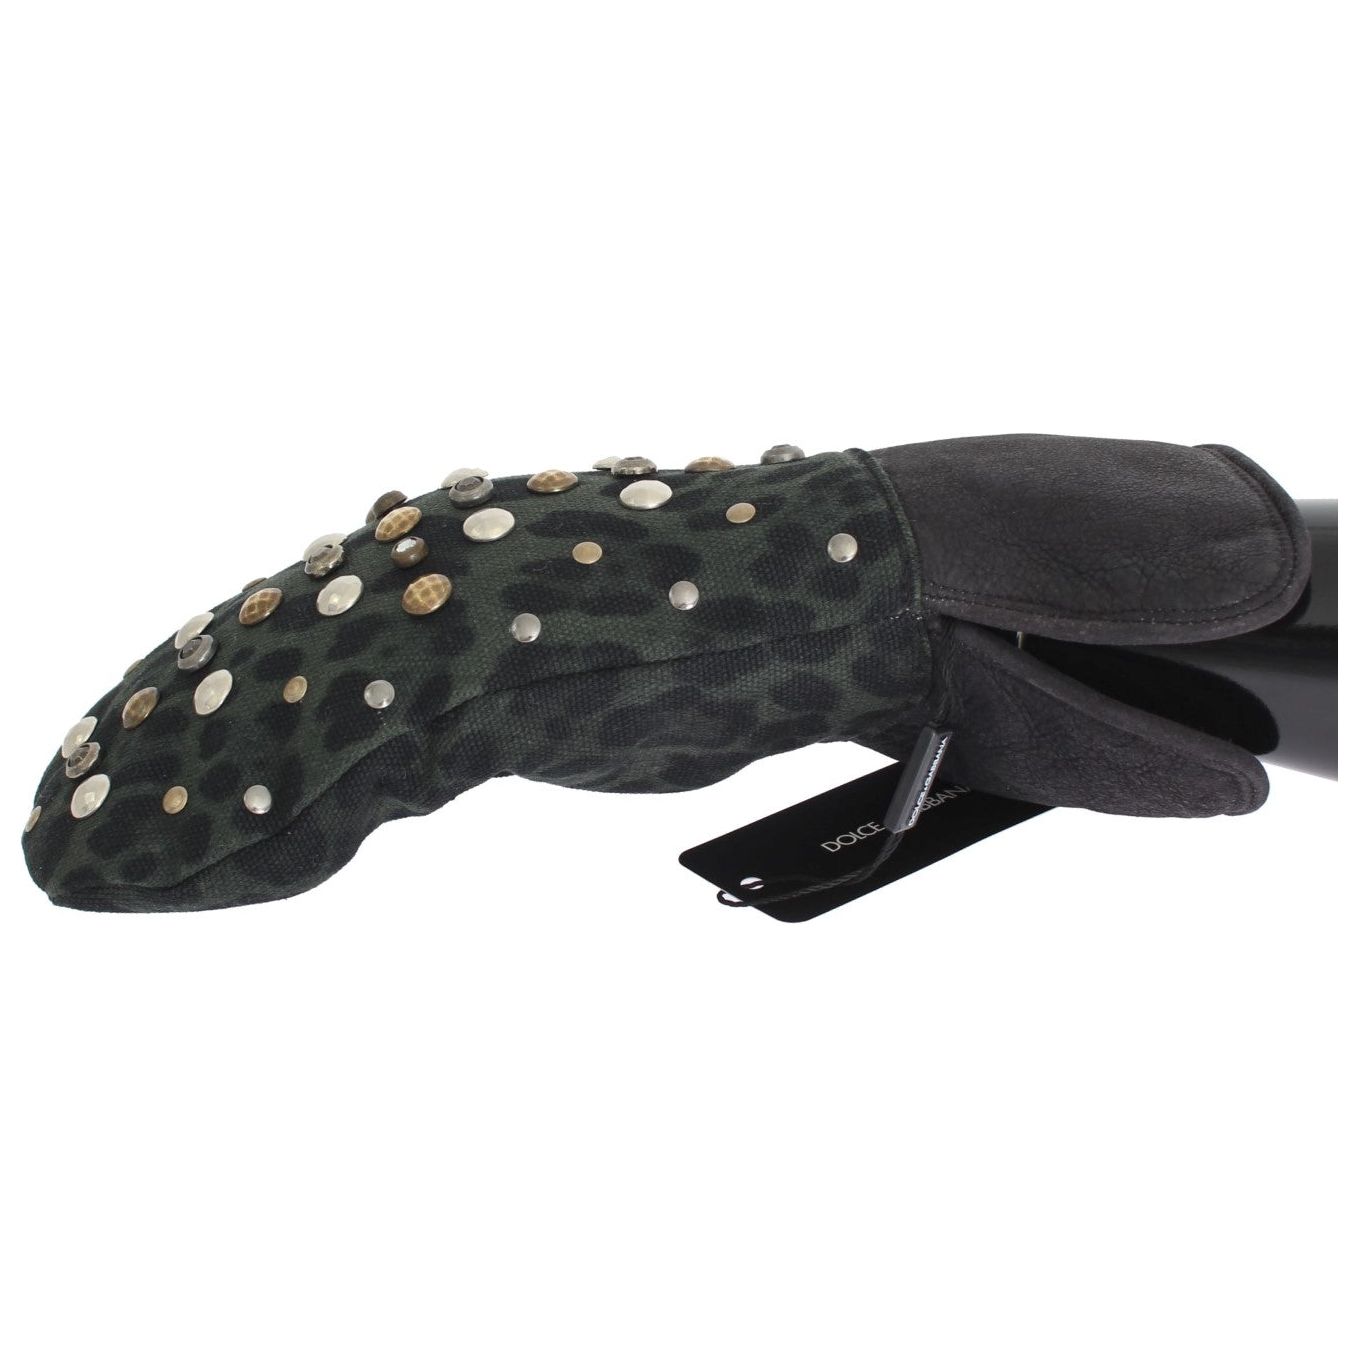 Dolce & Gabbana Elegant Studded Gray Wool Shearling Gloves gray-wool-shearling-studded-green-leopard-gloves 332620-gray-wool-shearling-studded-green-leopard-gloves-1.jpg